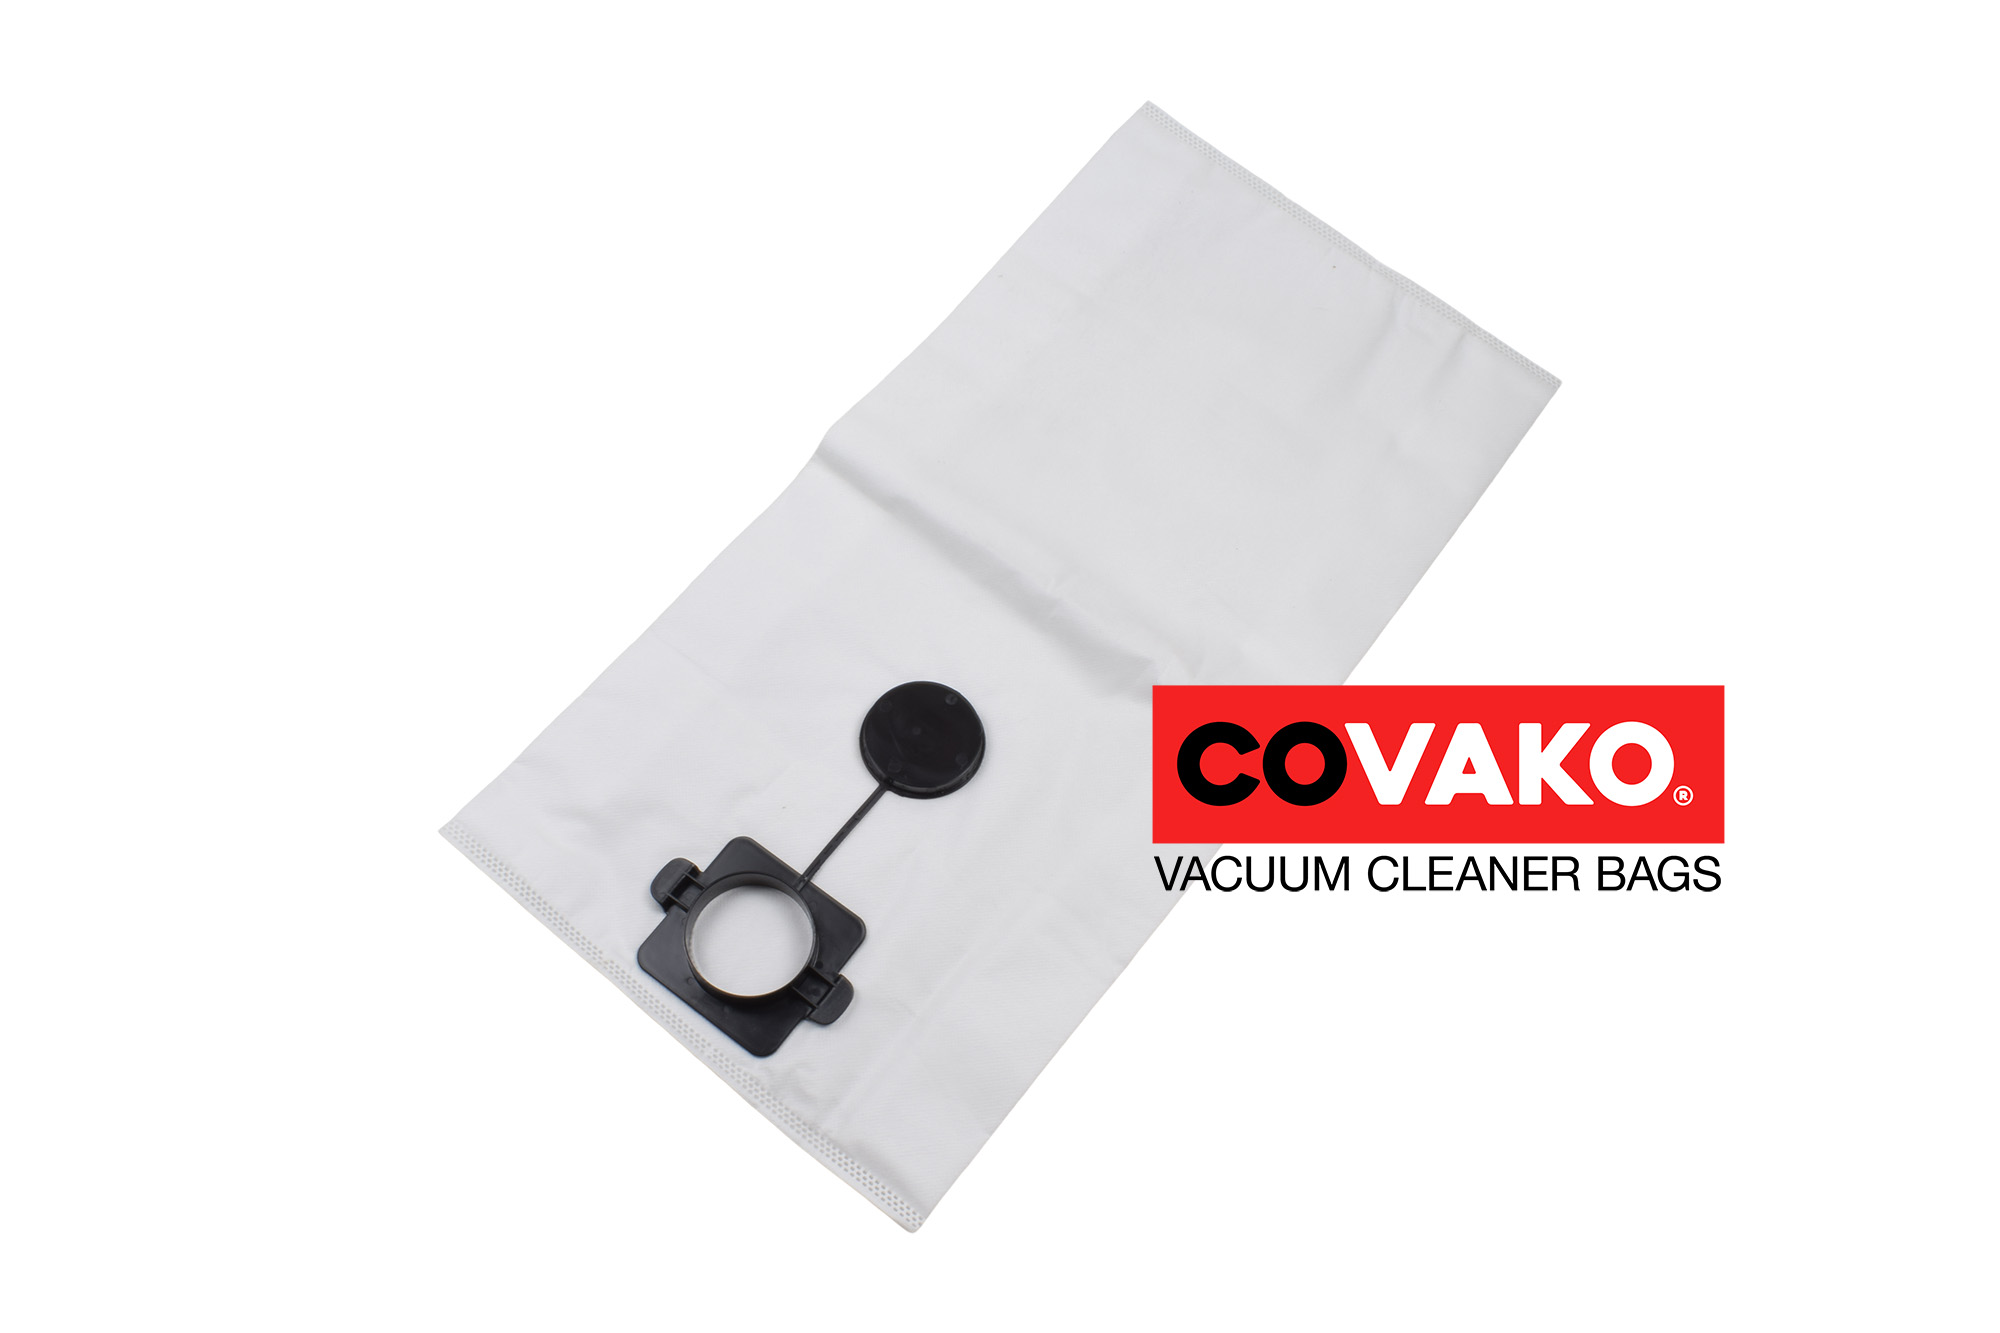 Makita 445x / Synthesis - Makita vacuum cleaner bags